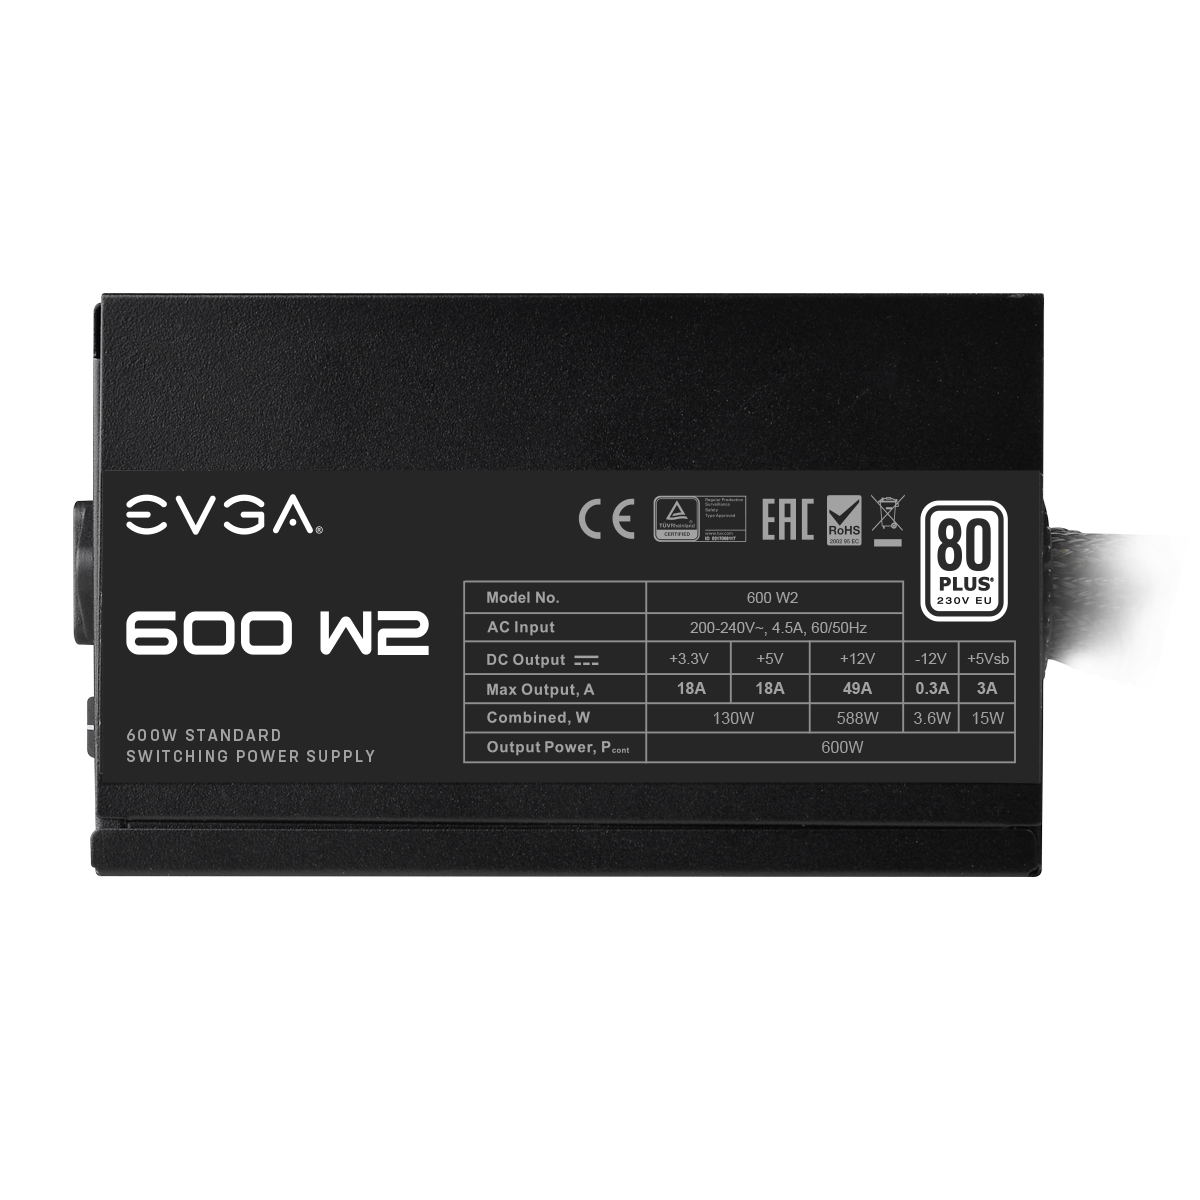 EVGA 600 W2 80+ WHITE 600W NON-MODULAR POWER SUPPLY